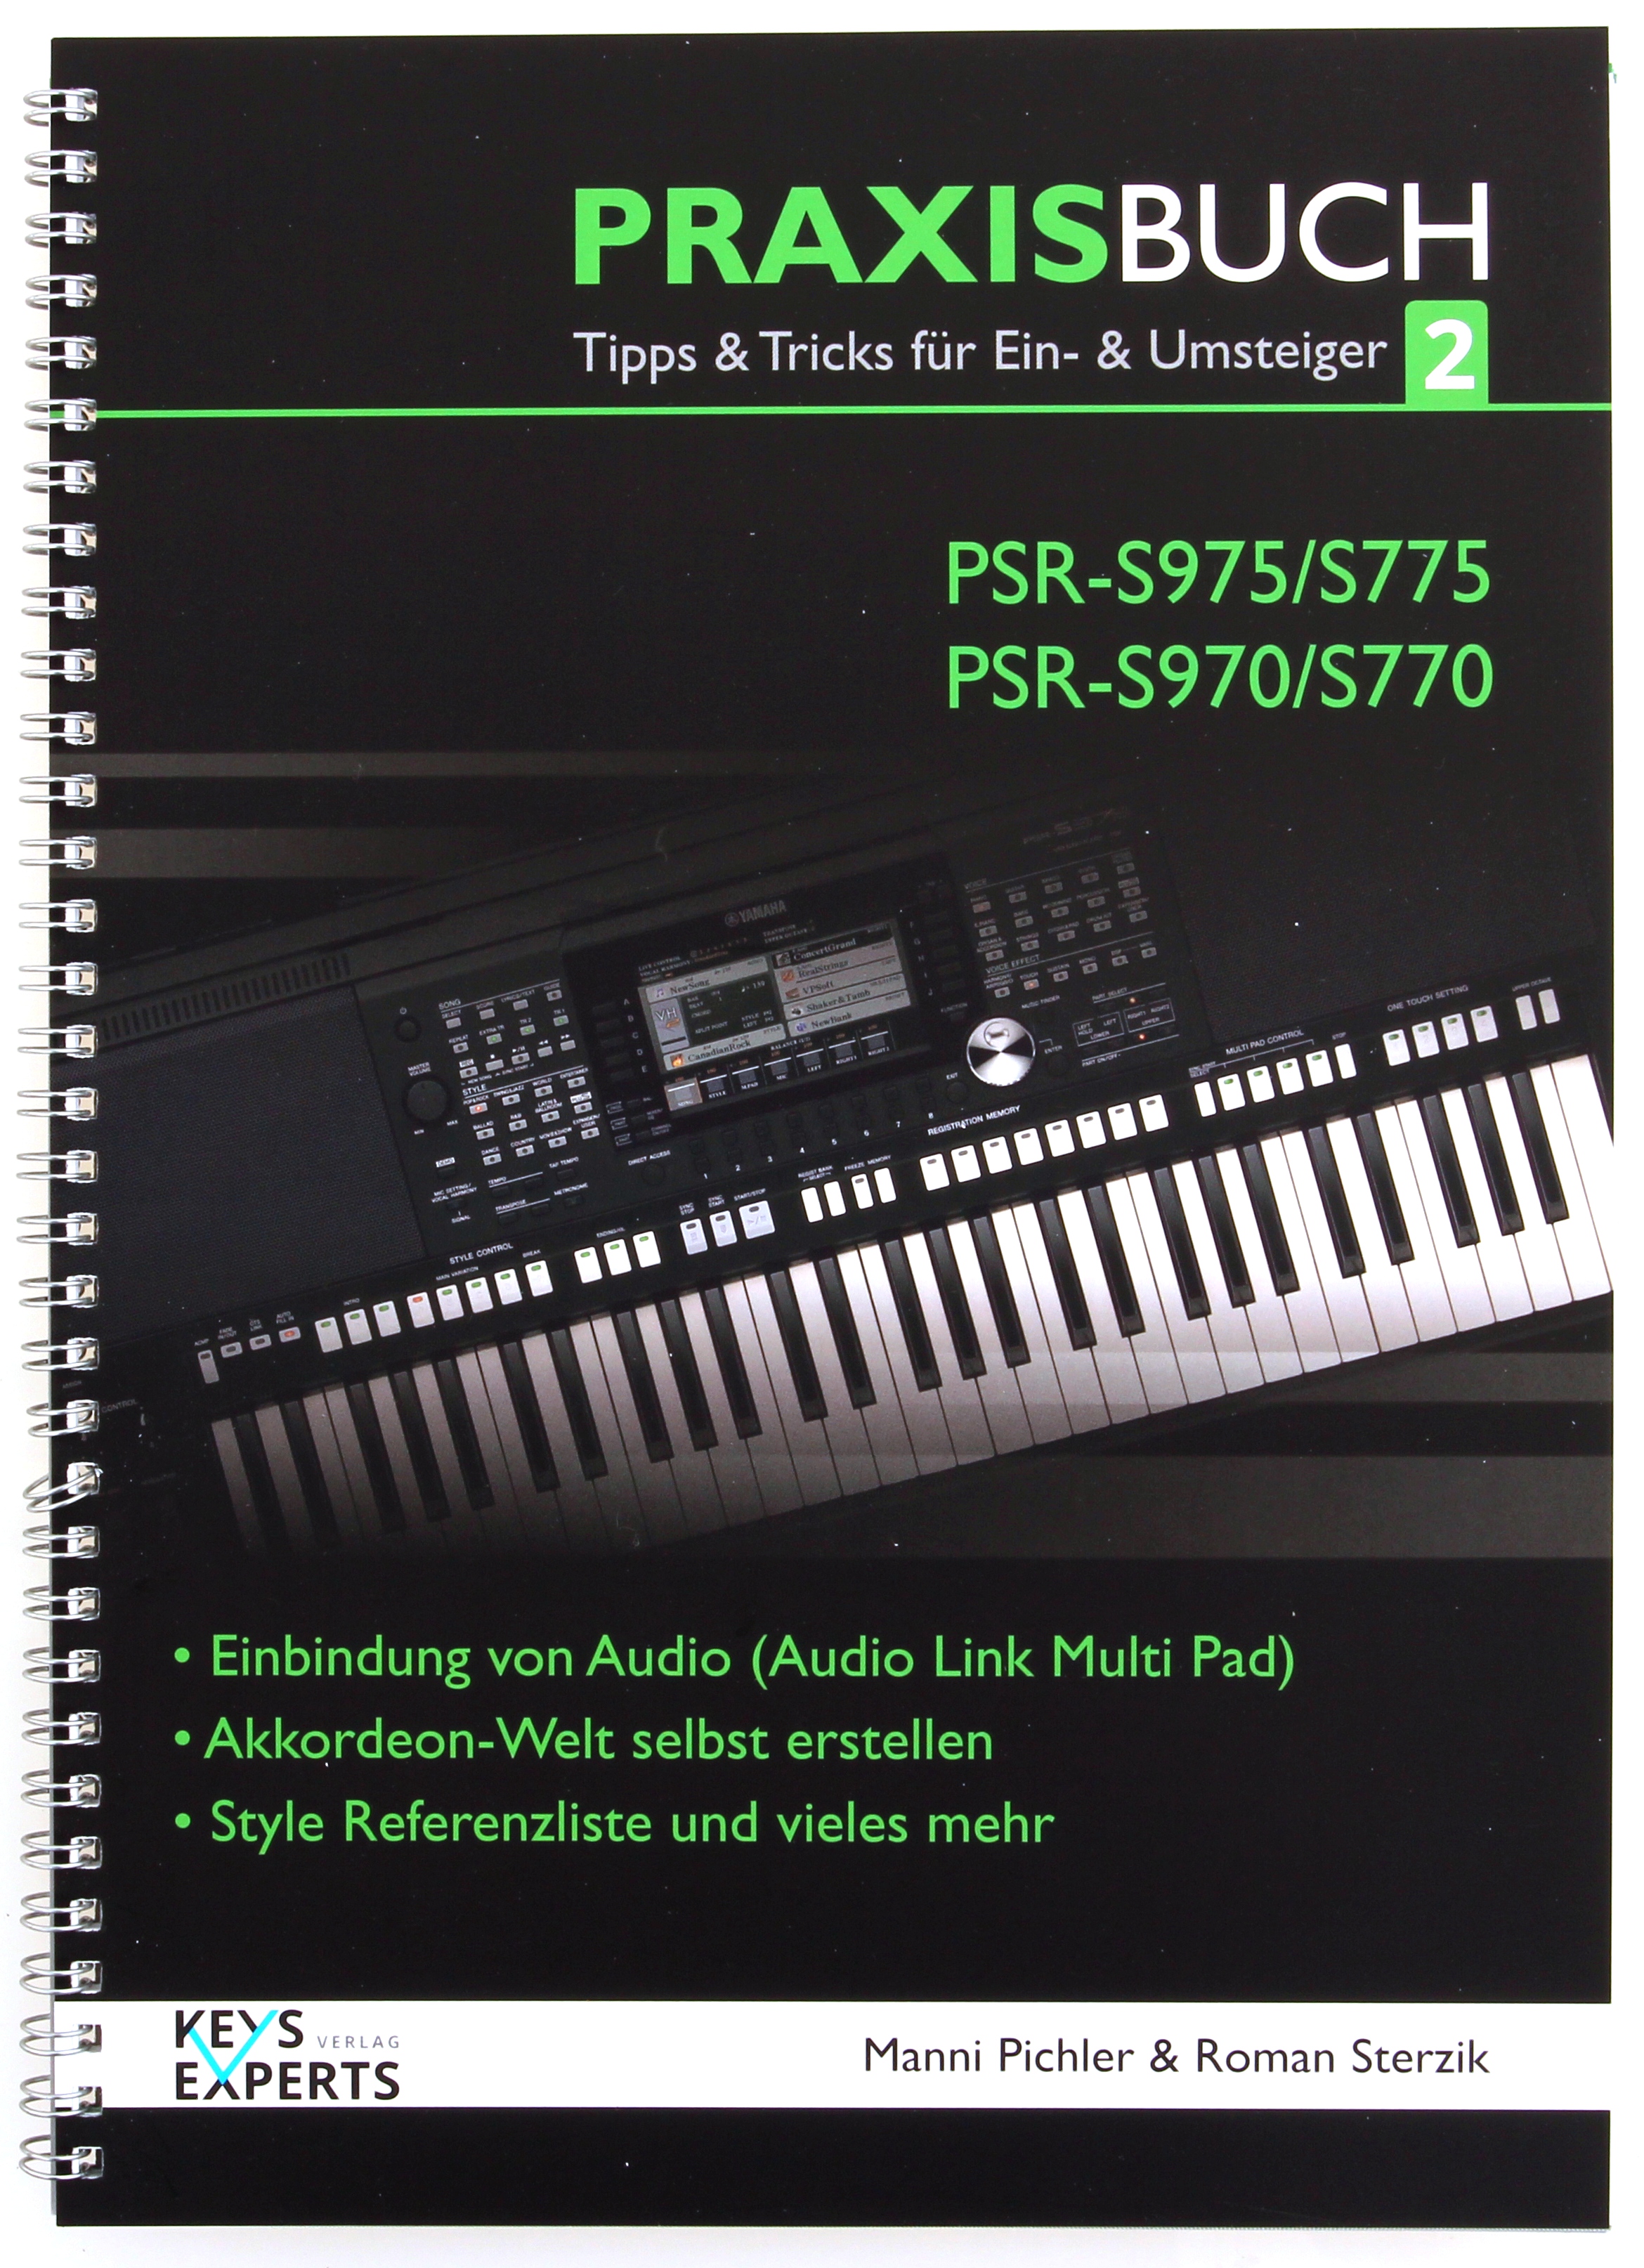 Yamaha Praxisbuch2 PSR-S975/775/S970/770